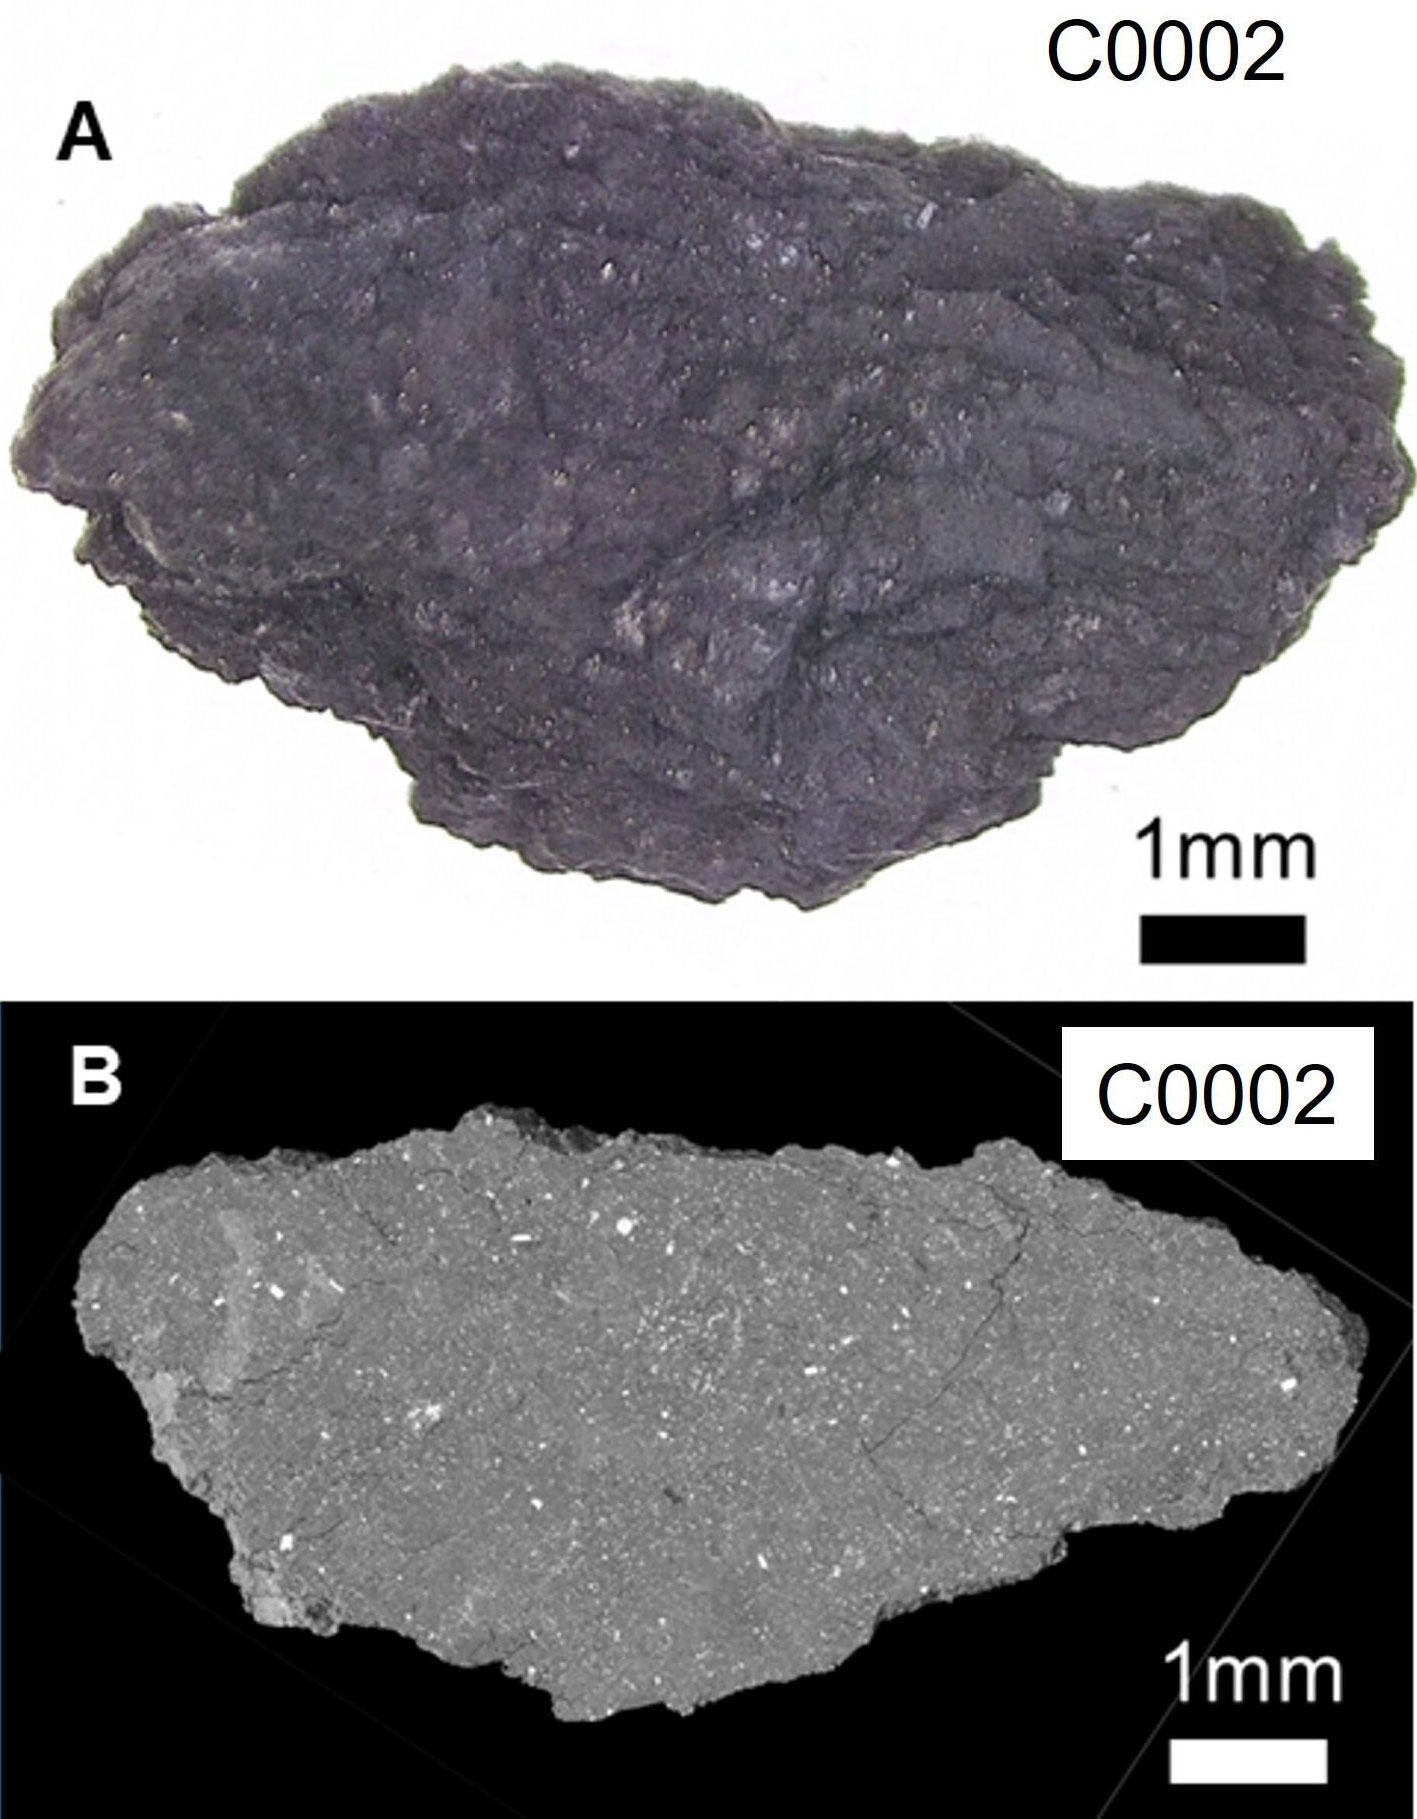  Micrografia óptica da maior amostra analisada do asteroide e (B) visão do interior da amostra (Foto: SPring-8, Tohoku Univ.)